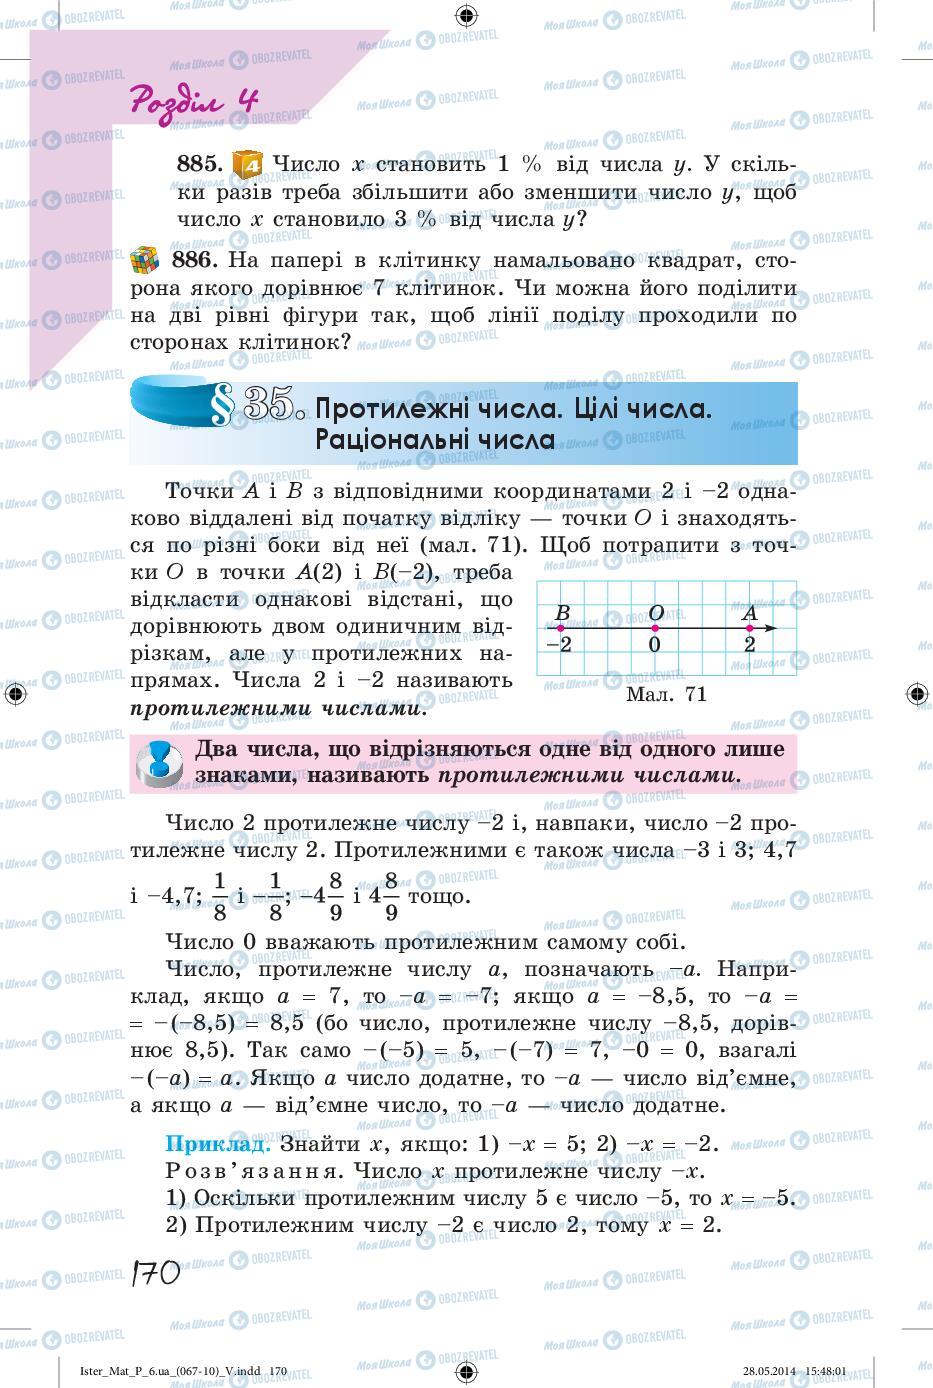 Підручники Математика 6 клас сторінка 170